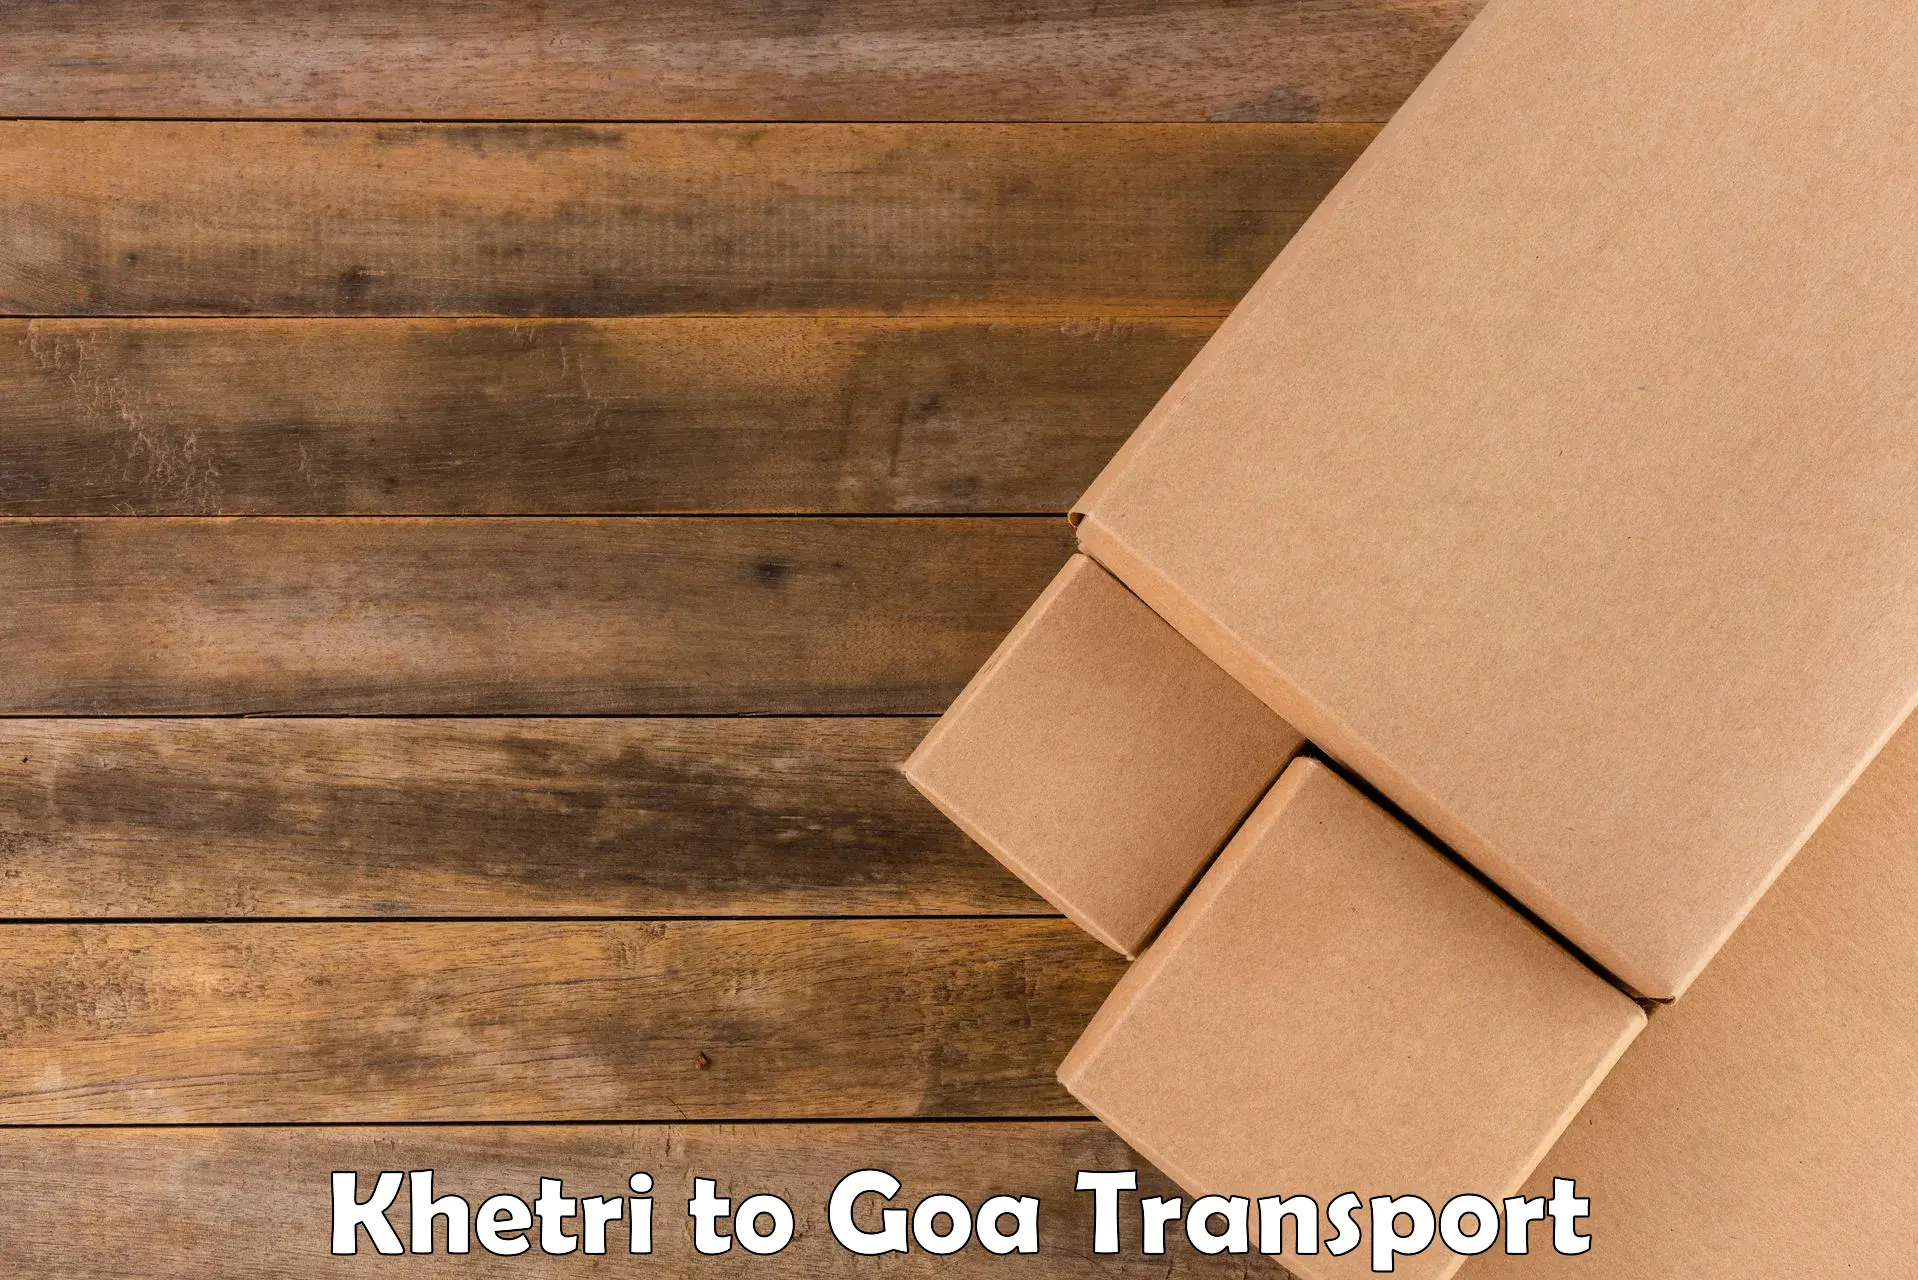 Nearby transport service Khetri to Panaji